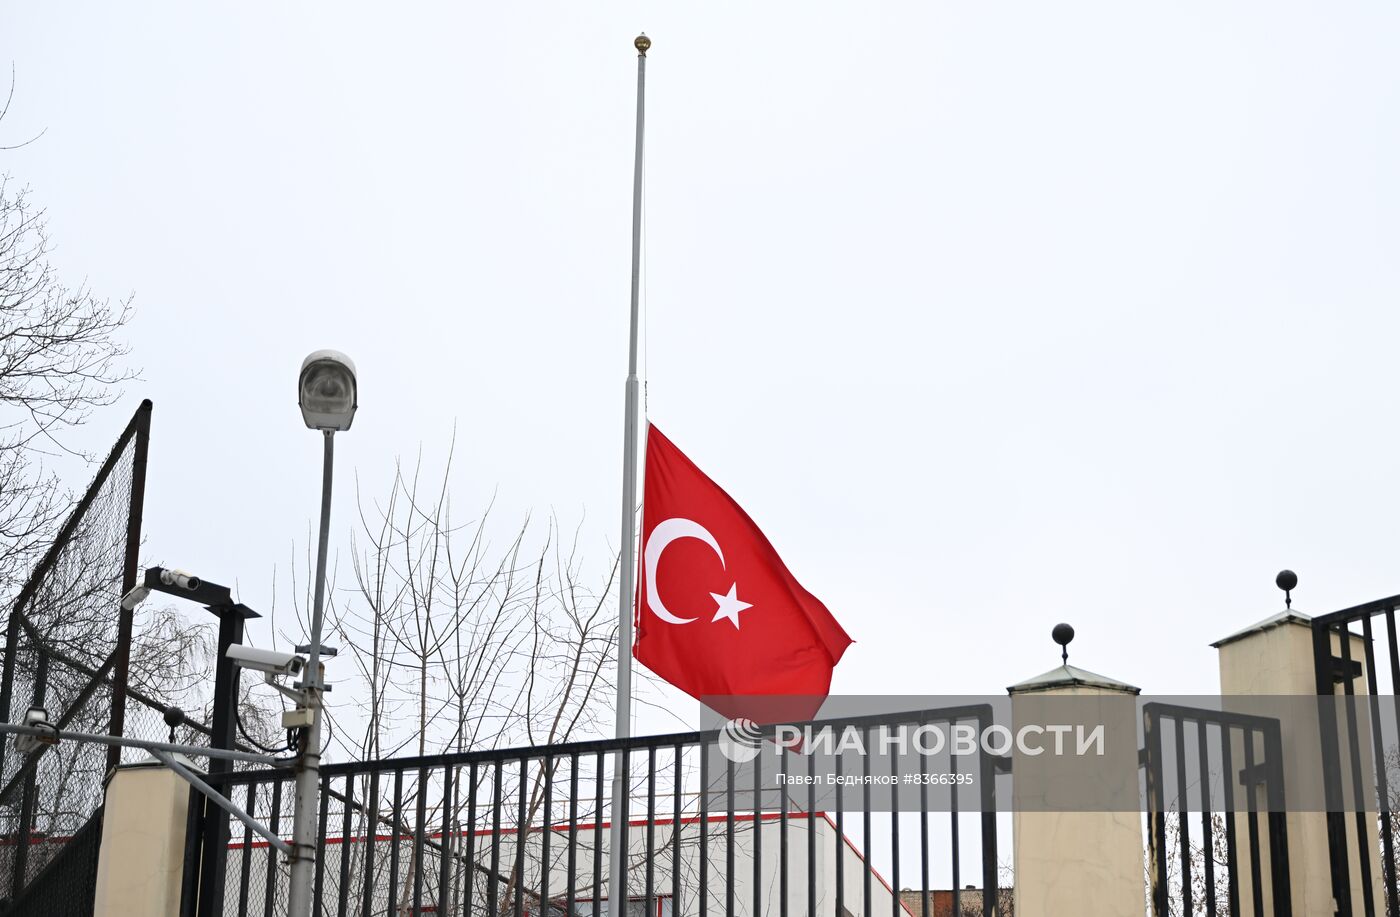 К посольствам Турции и Сирии несут цветы в память о погибших в результате землетрясения